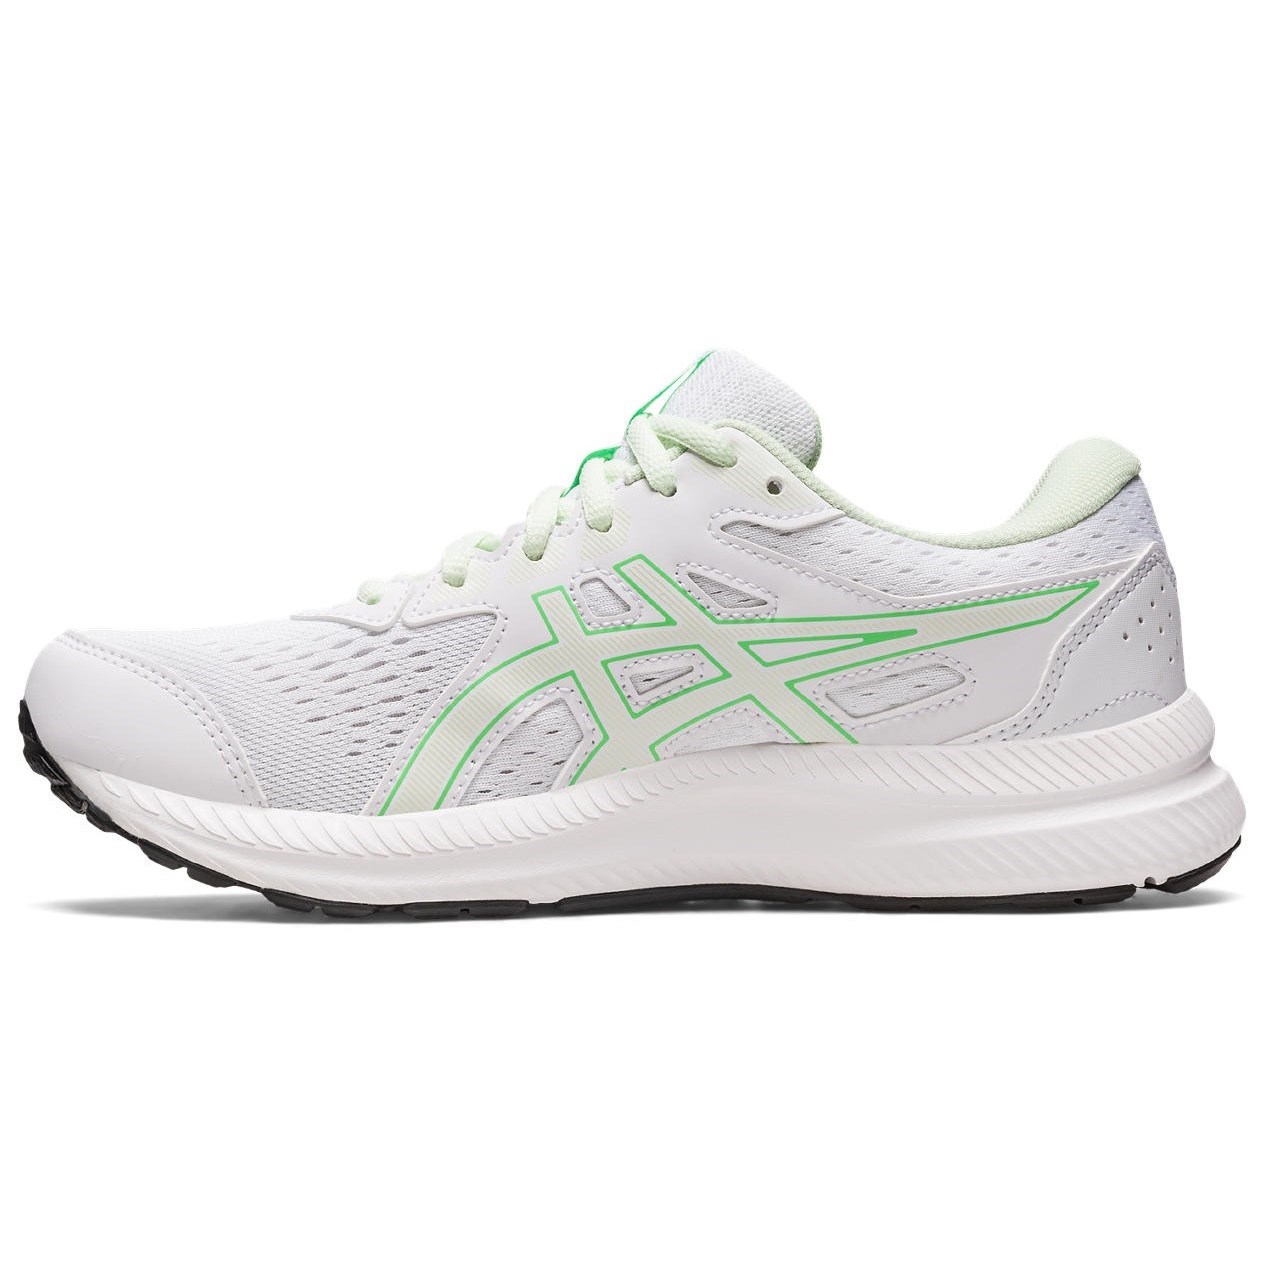 Asics Gel Contend 8 - Womens Running Shoes - White/Whisper Green ...